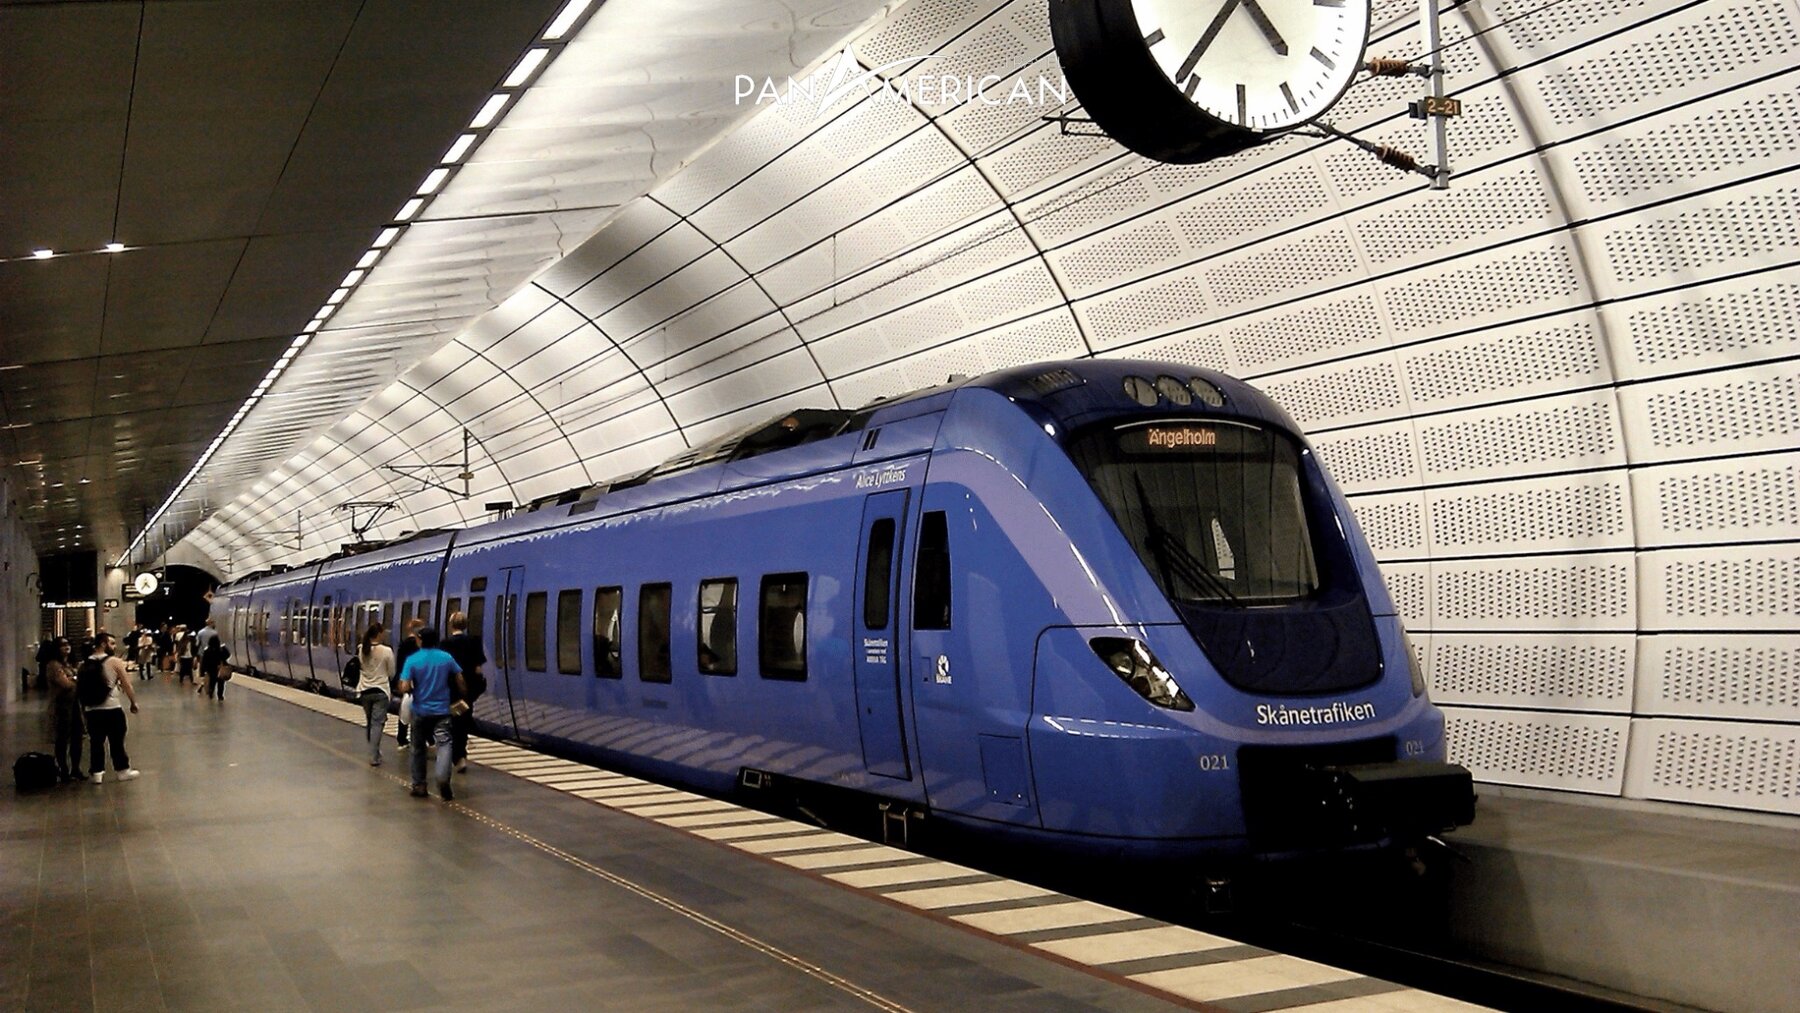 Di chuyển bằng tàu điện ngầm ở Châu Âu